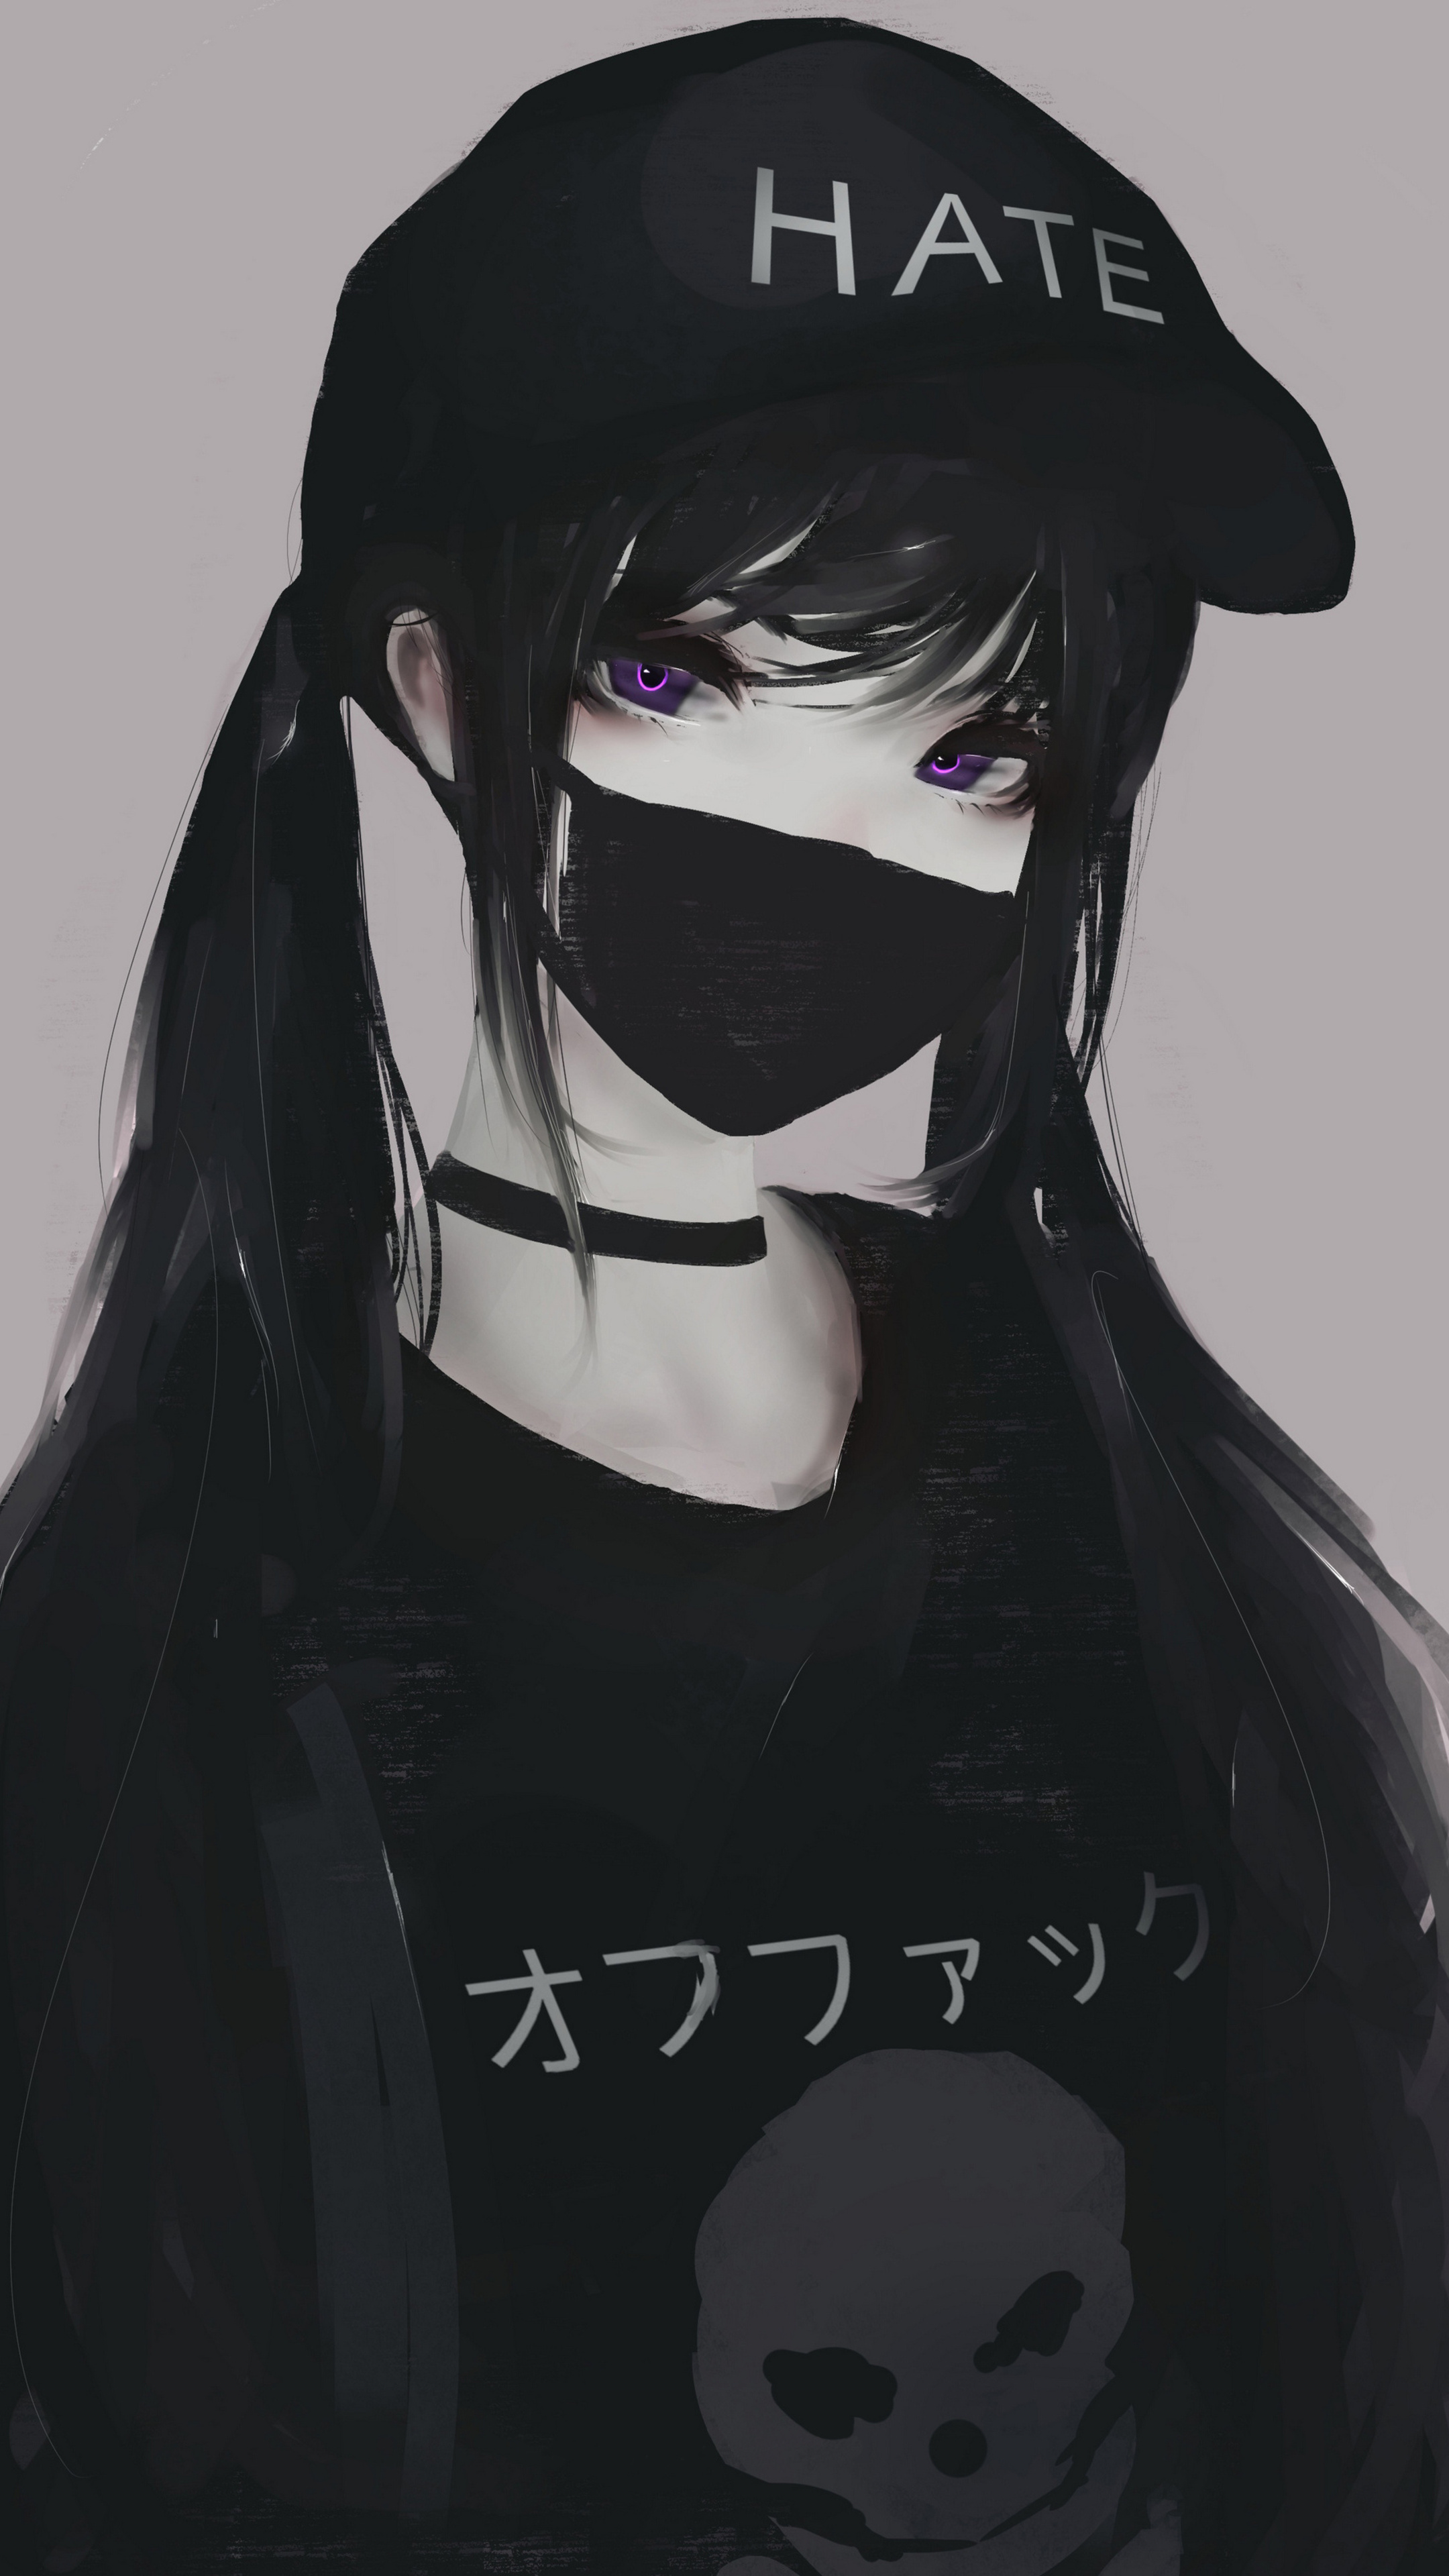 Anime Girl With Mask » Arthatravel.com